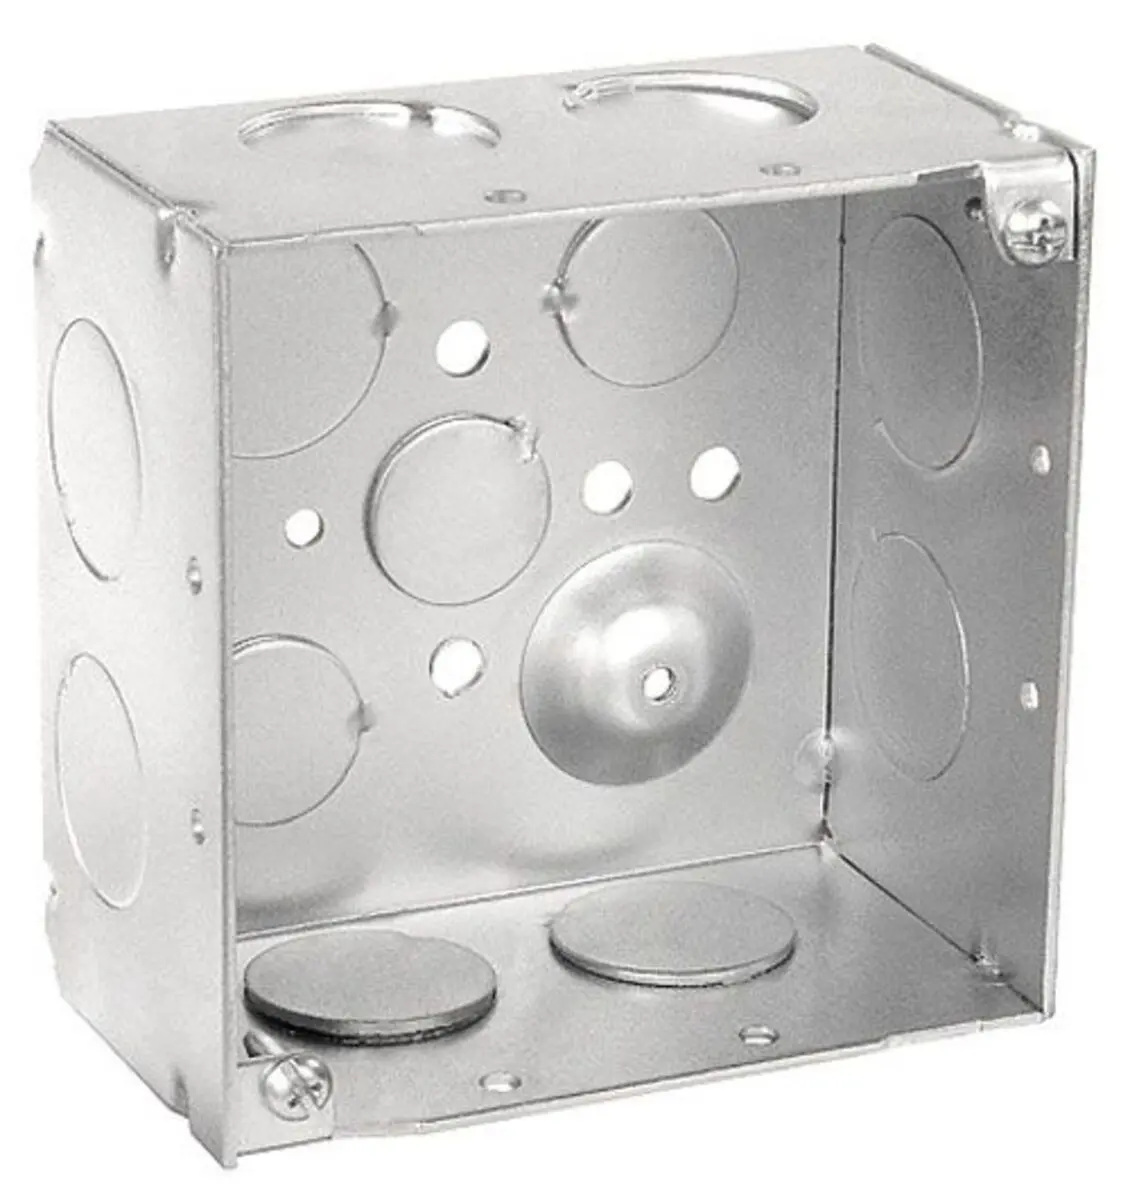 صناديق مربعة مقاس 4 بوصة عمق 2 - 1/8 بوصة صندوق موصول معدن ملحوم Ip65 صندوق موصل كهربائي مقاوم للماء مع فتحات تركيب